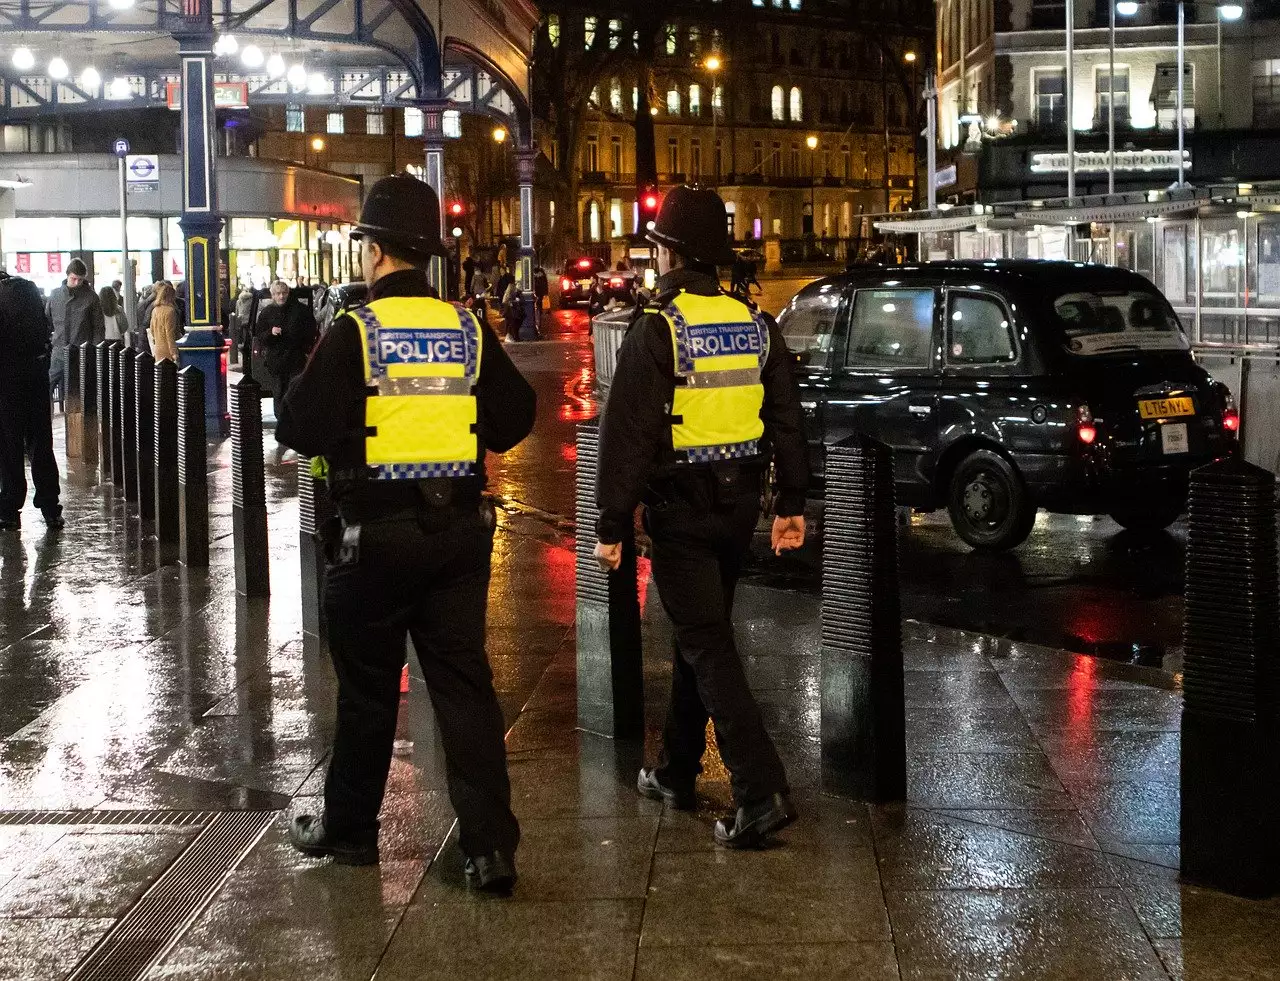 Terroranschlag in der Stadt Reading nahe London - 3 Menschen getötet bei Messerangriff 